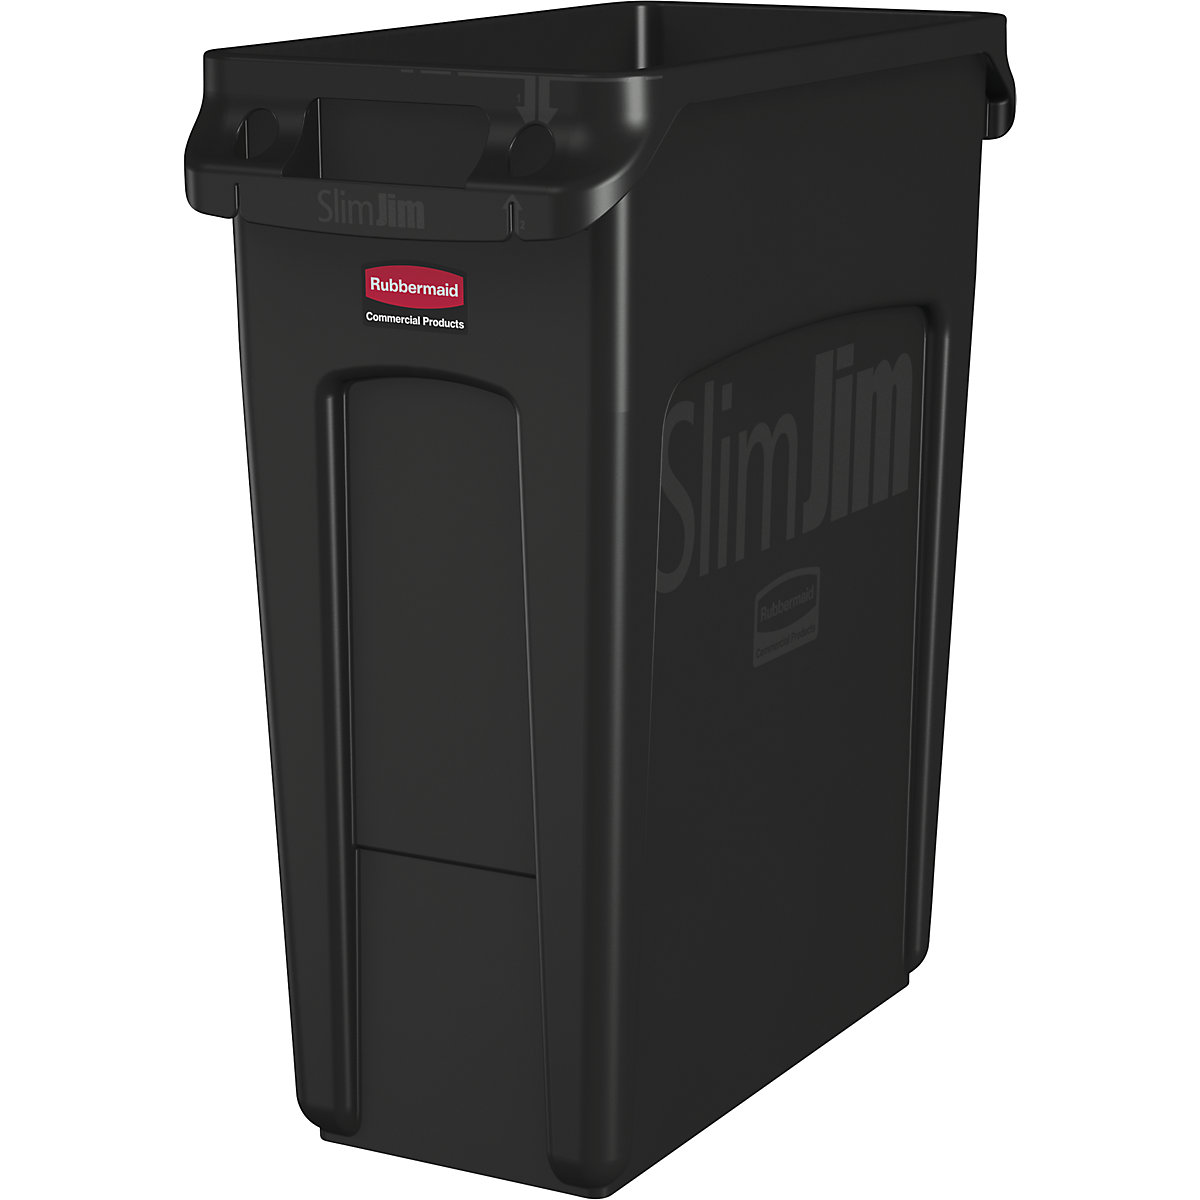 Coletor de materiais recicláveis/balde do lixo SLIM JIM® – Rubbermaid, volume 60 l, com canais de ventilação, preto-7